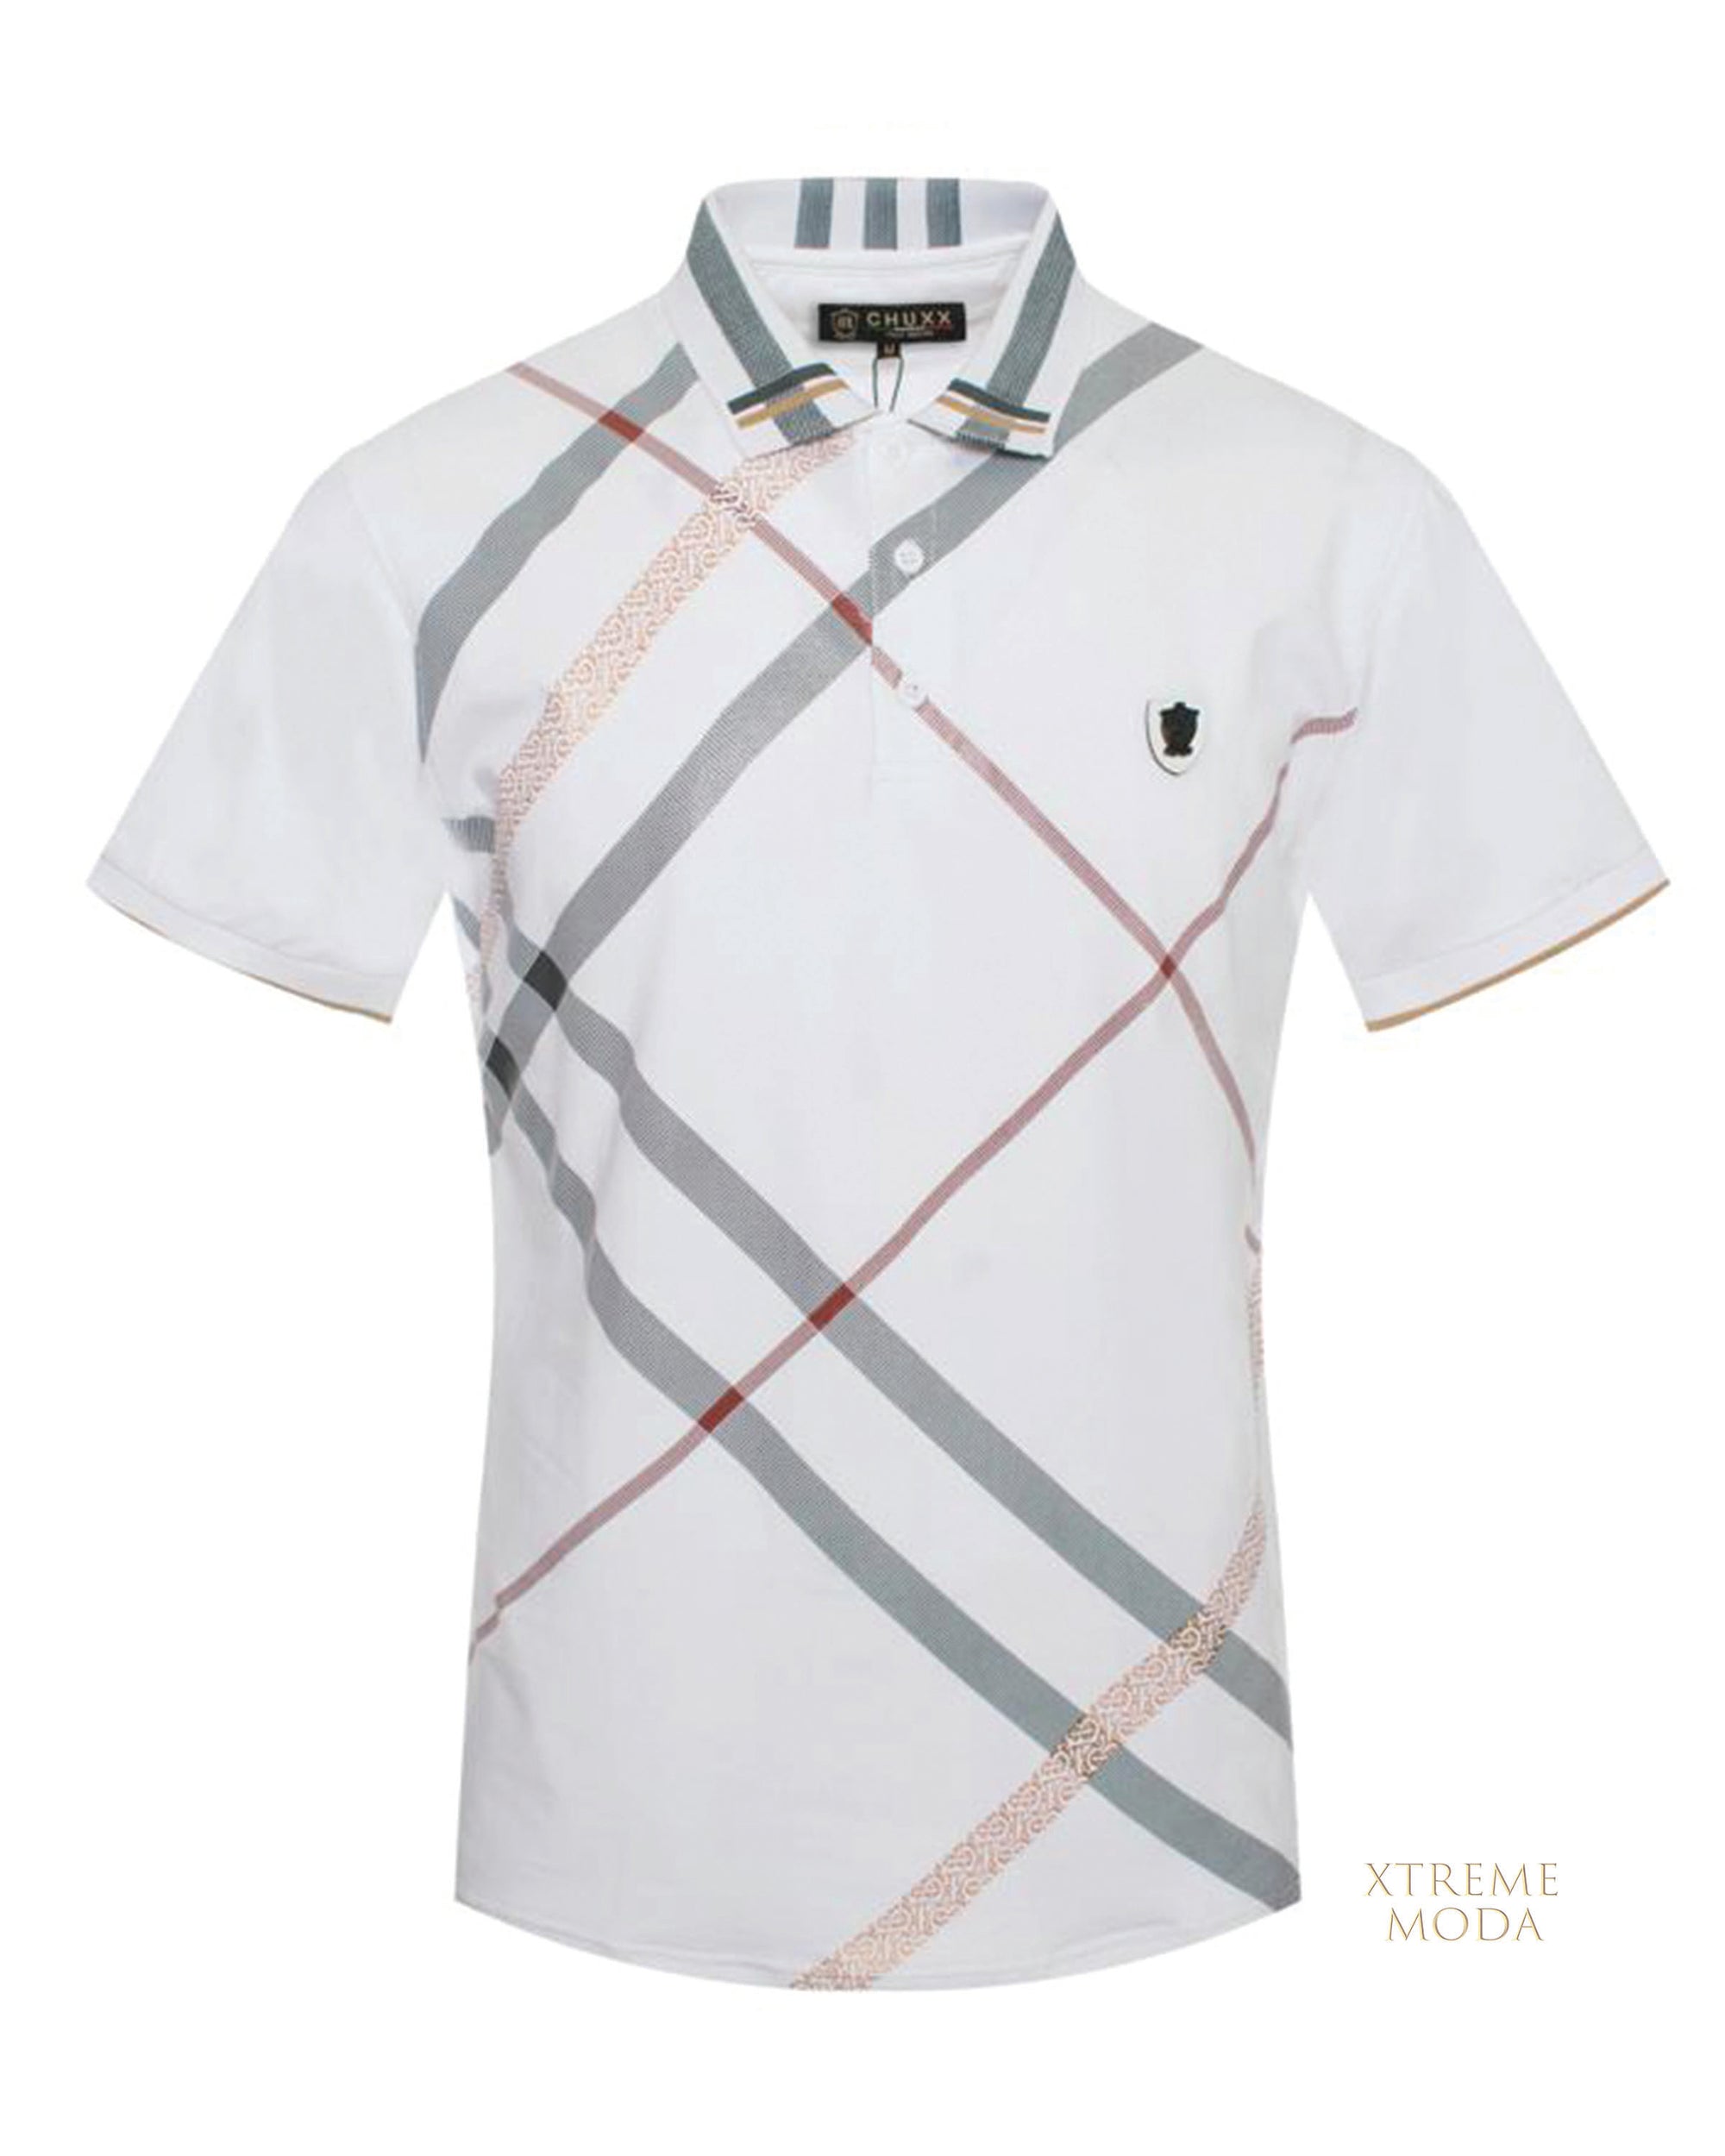 Men's fashion stripes polo shirt